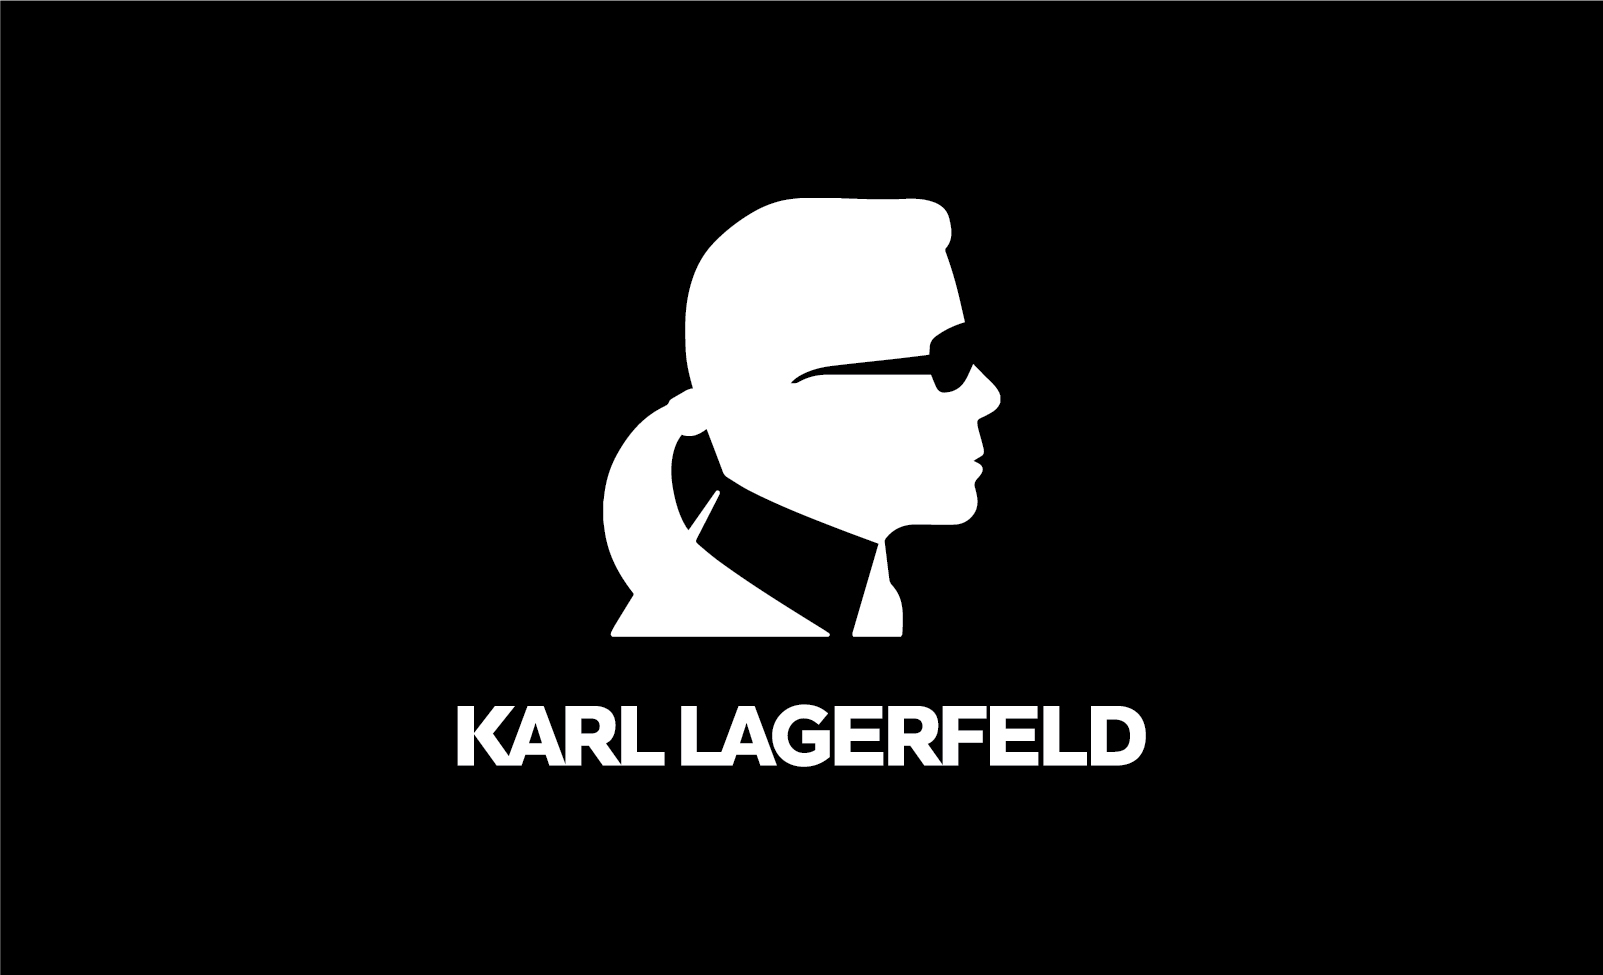 Venta > karl lagerfeld marca de ropa > en stock